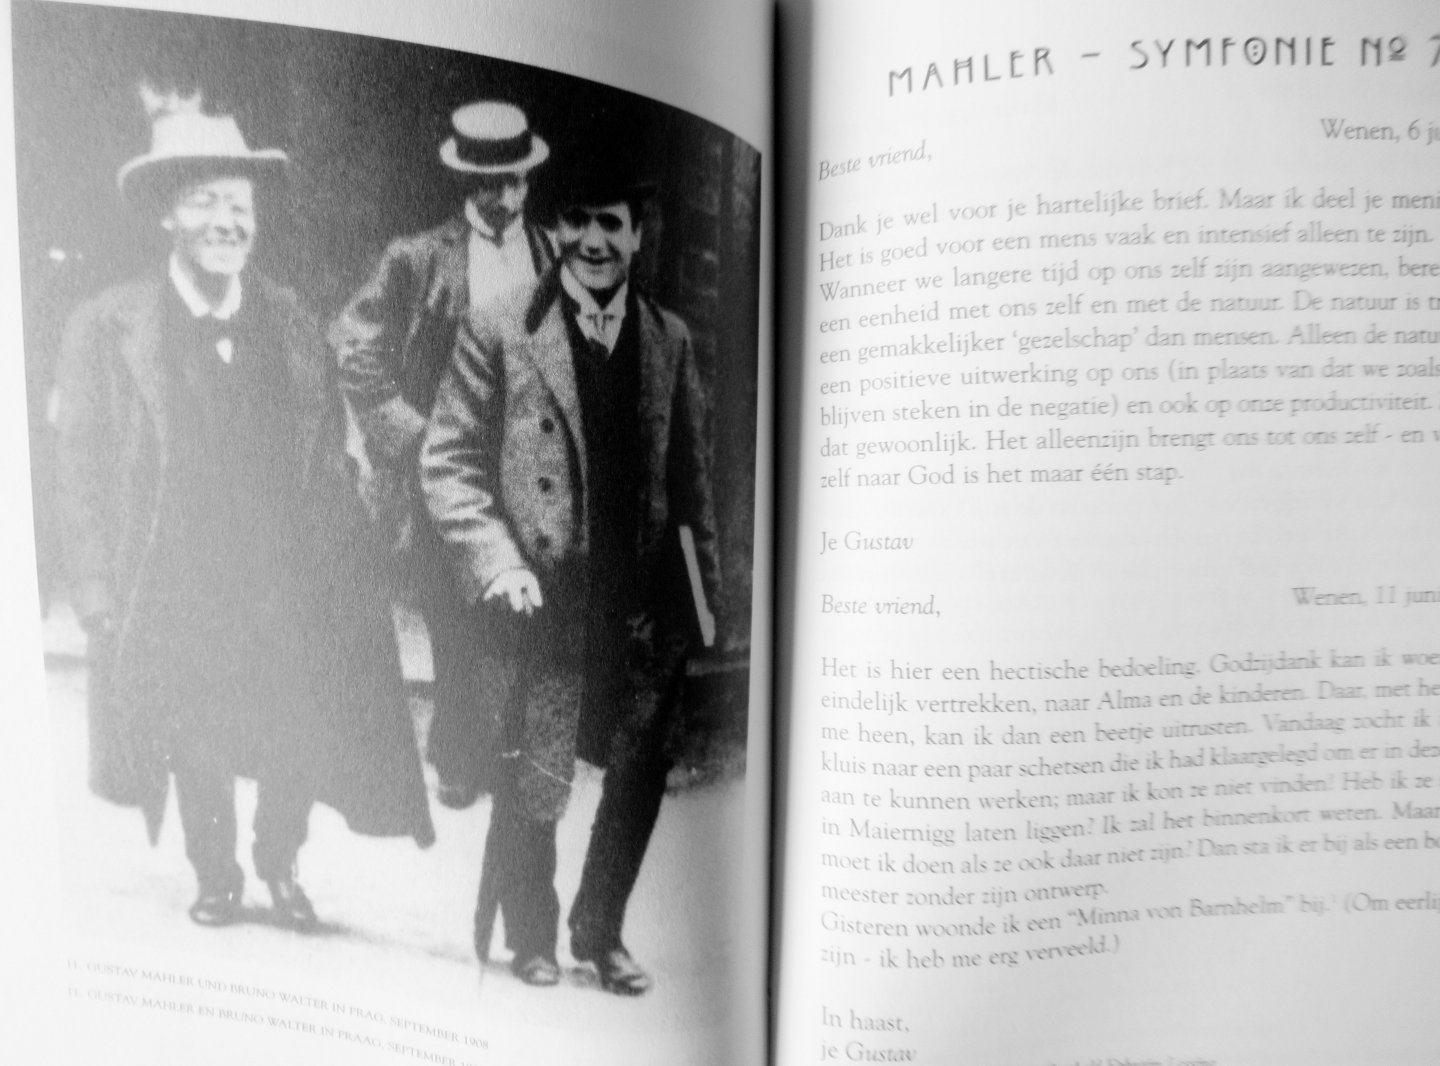 Haenchen, Hartmut - Liechtenstein, Sabine (vertaling - Mahler Wenen Amsterdam. Uitleg over zijn symfonieën 2, 3, 4, 5, 6 en 7